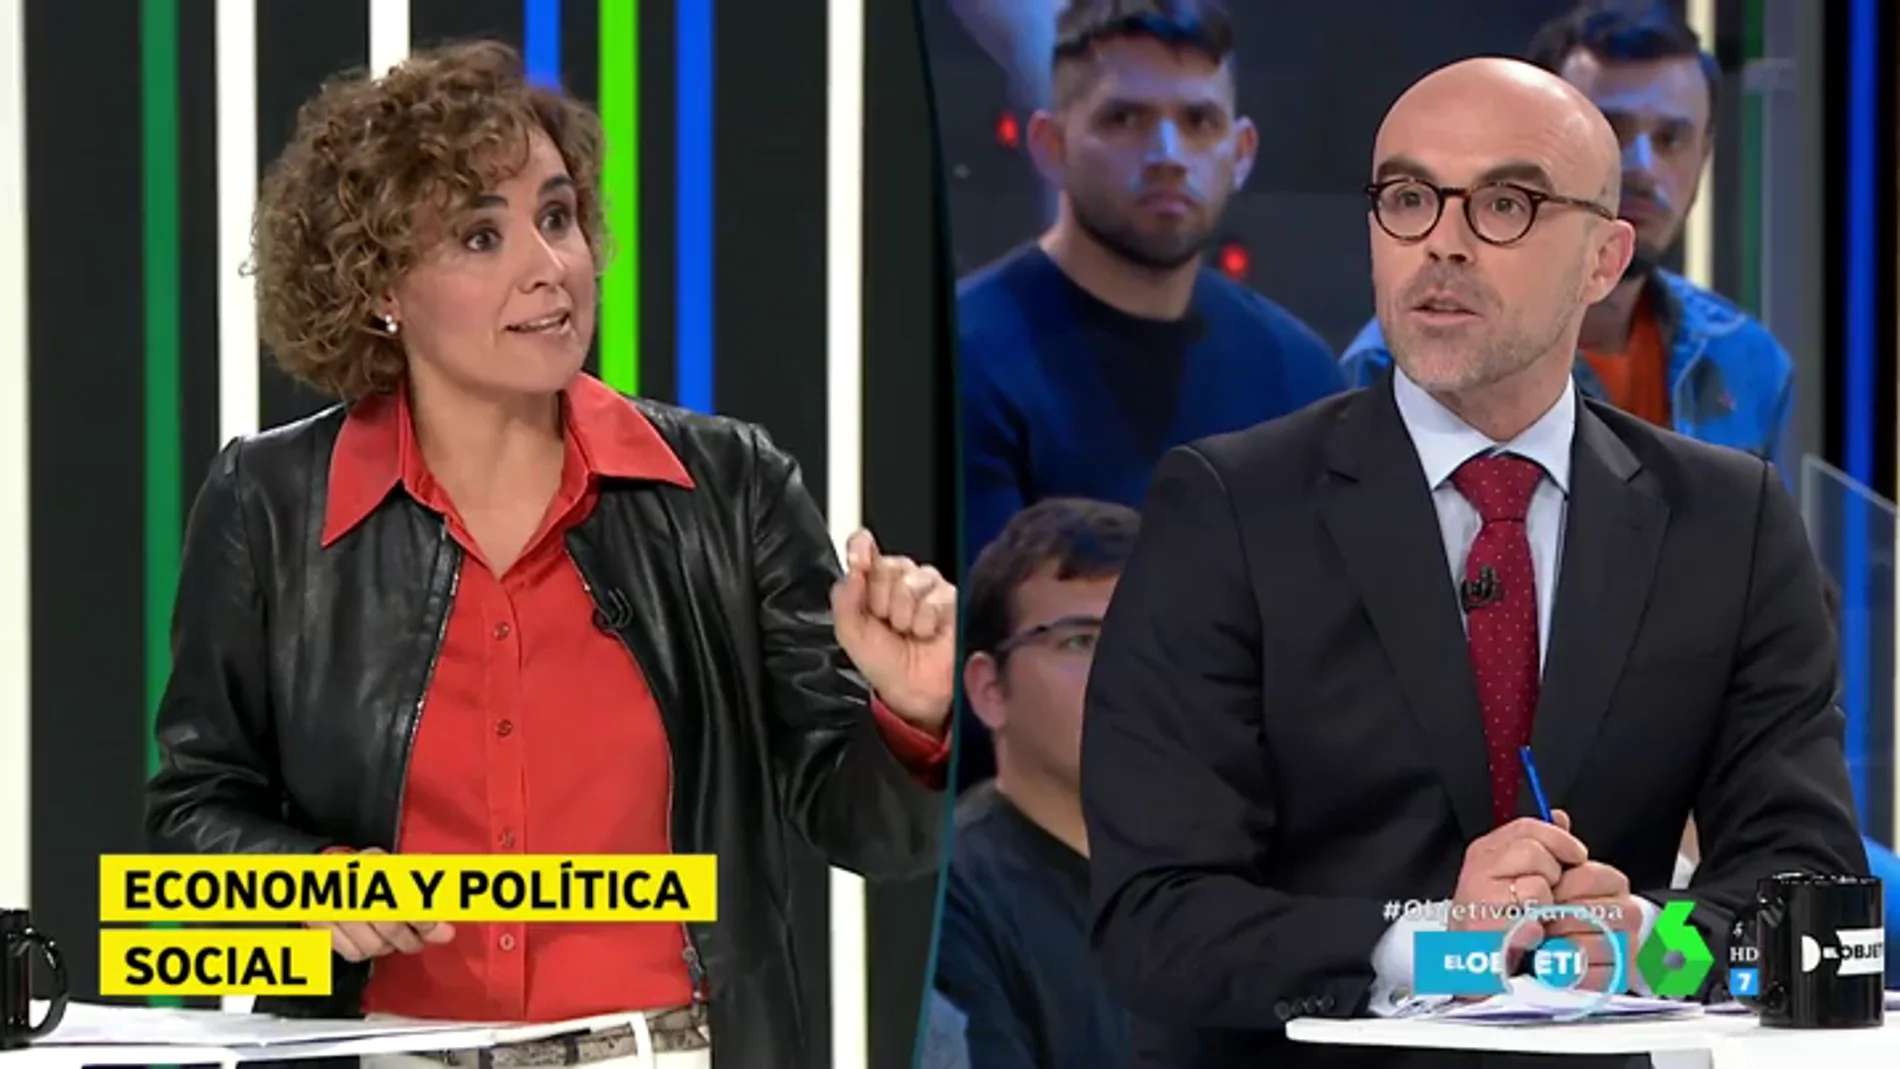 Dolors Montserrat pone entre las cuerdas a Jorge Buxadé: "¿En qué partido político se integrarán si salen elegidos en Europa?"